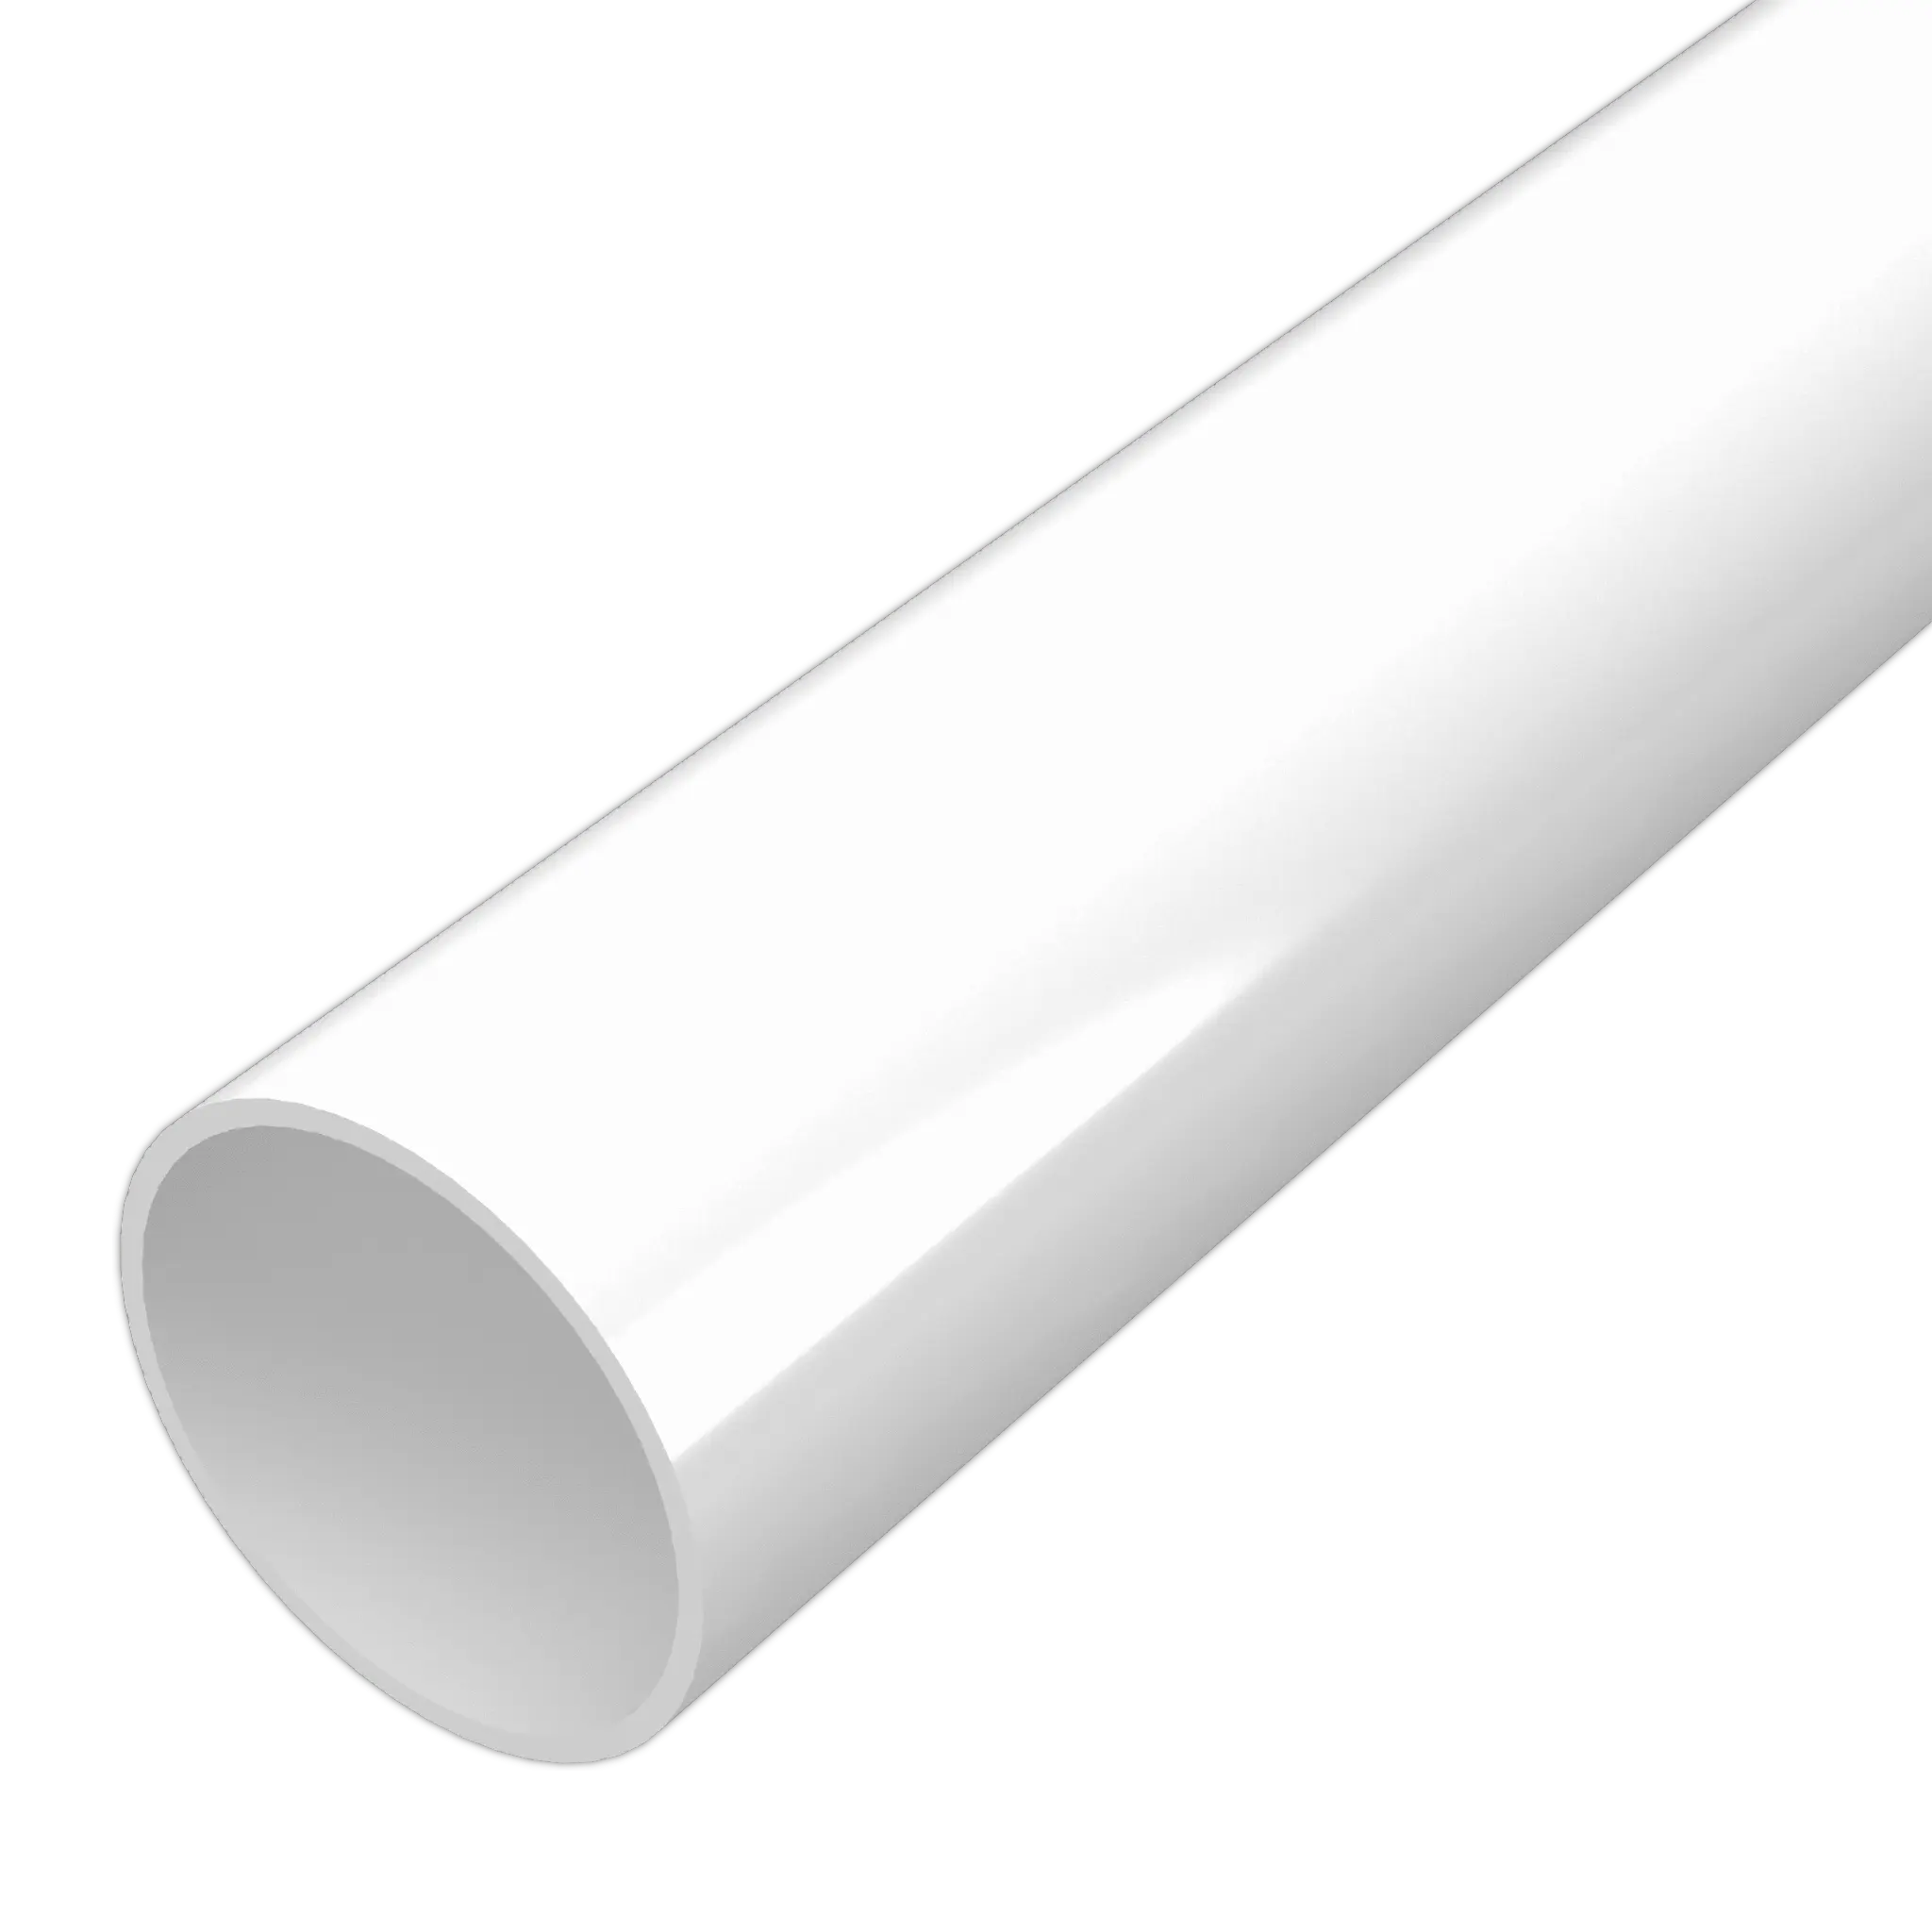 PVC Rigip boru kablosu boru PVC UL94, v0 M1 sert Soilles tarım # supernovember yüksek kalite düşük fiyat türkiye'de yapılan